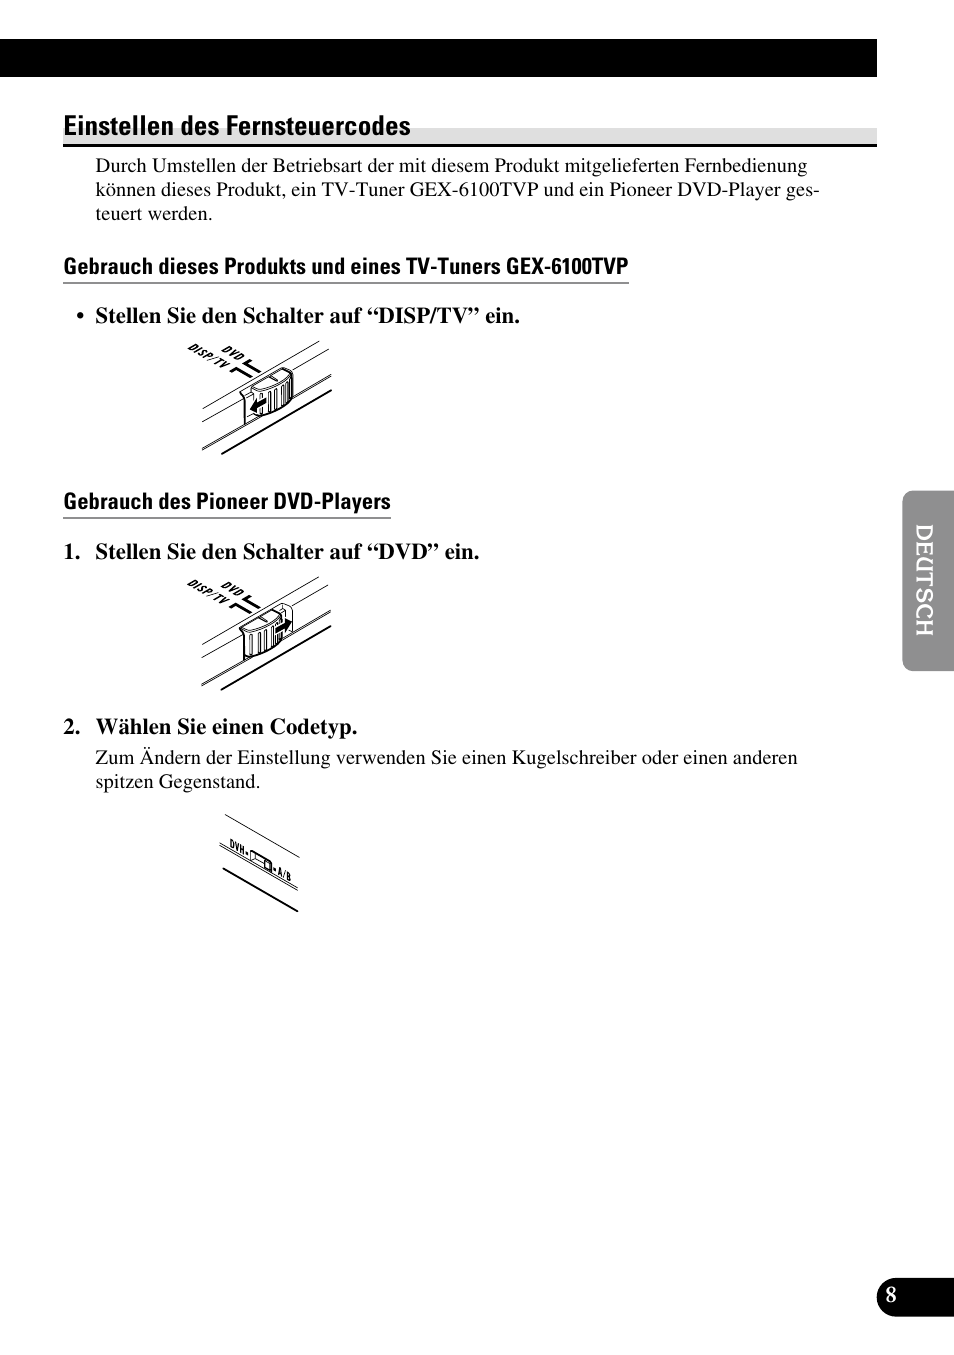 Einstellen des fernsteuercodes, Gebrauch des pioneer dvd-players | Pioneer AVR-W6100 User Manual | Page 77 / 104